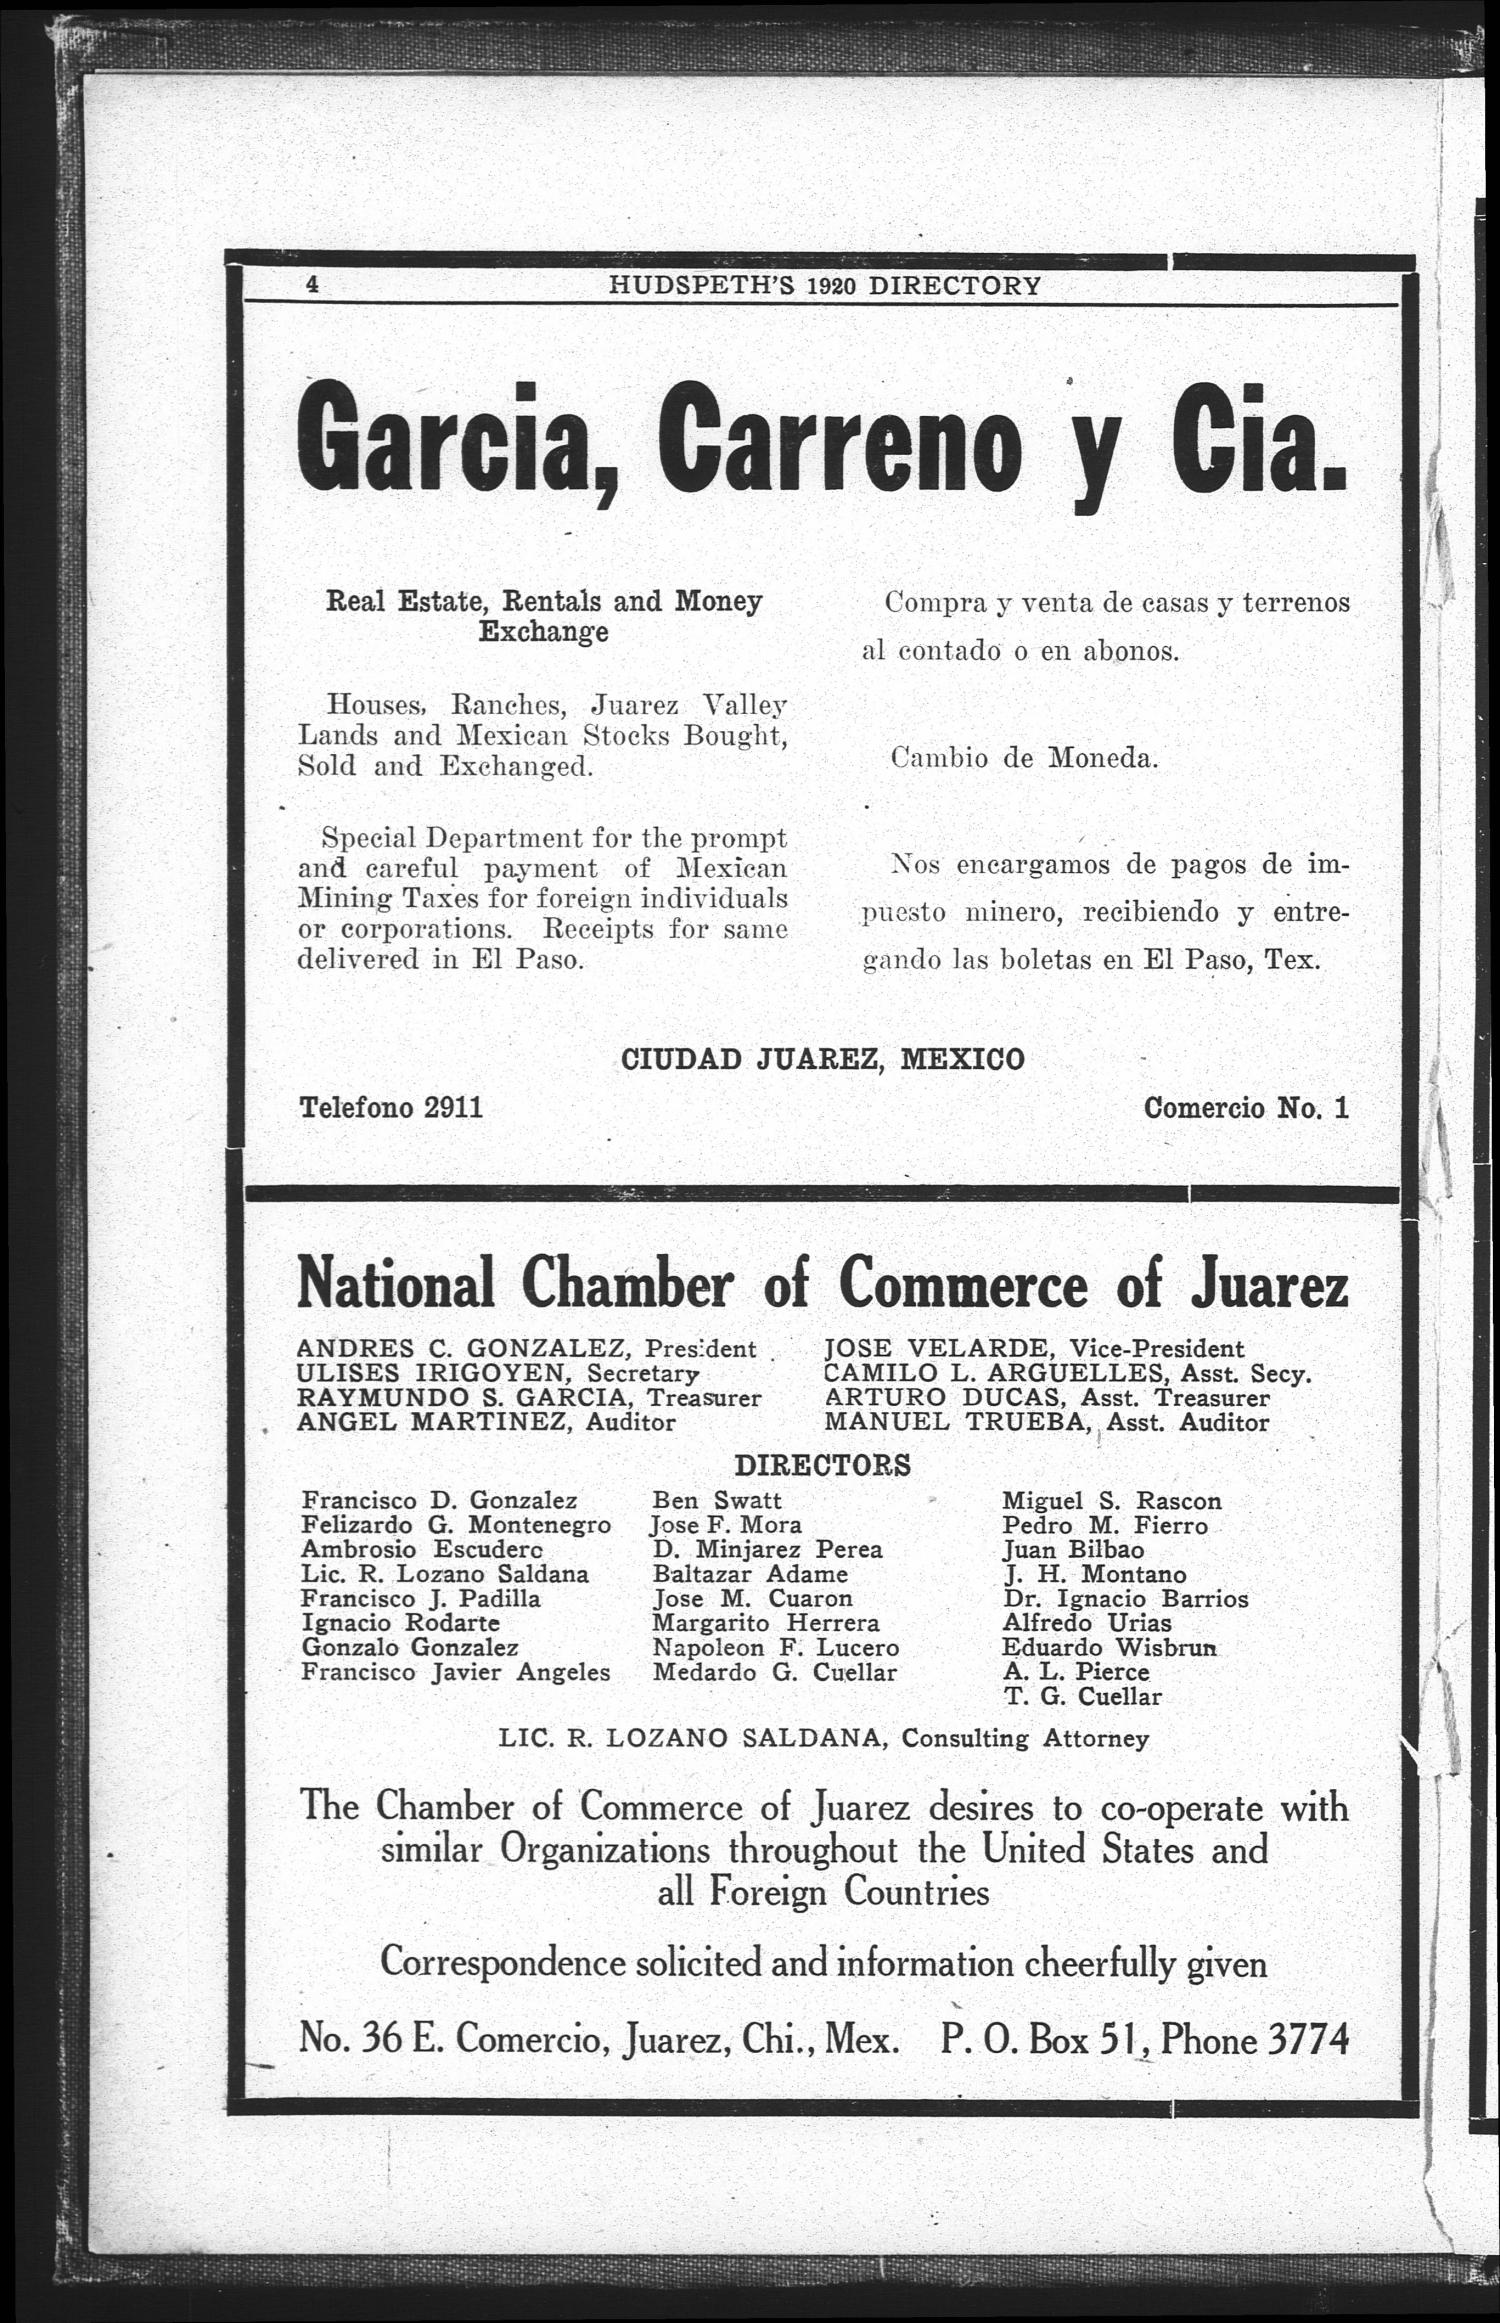 El Paso City Directory, 1920
                                                
                                                    4
                                                